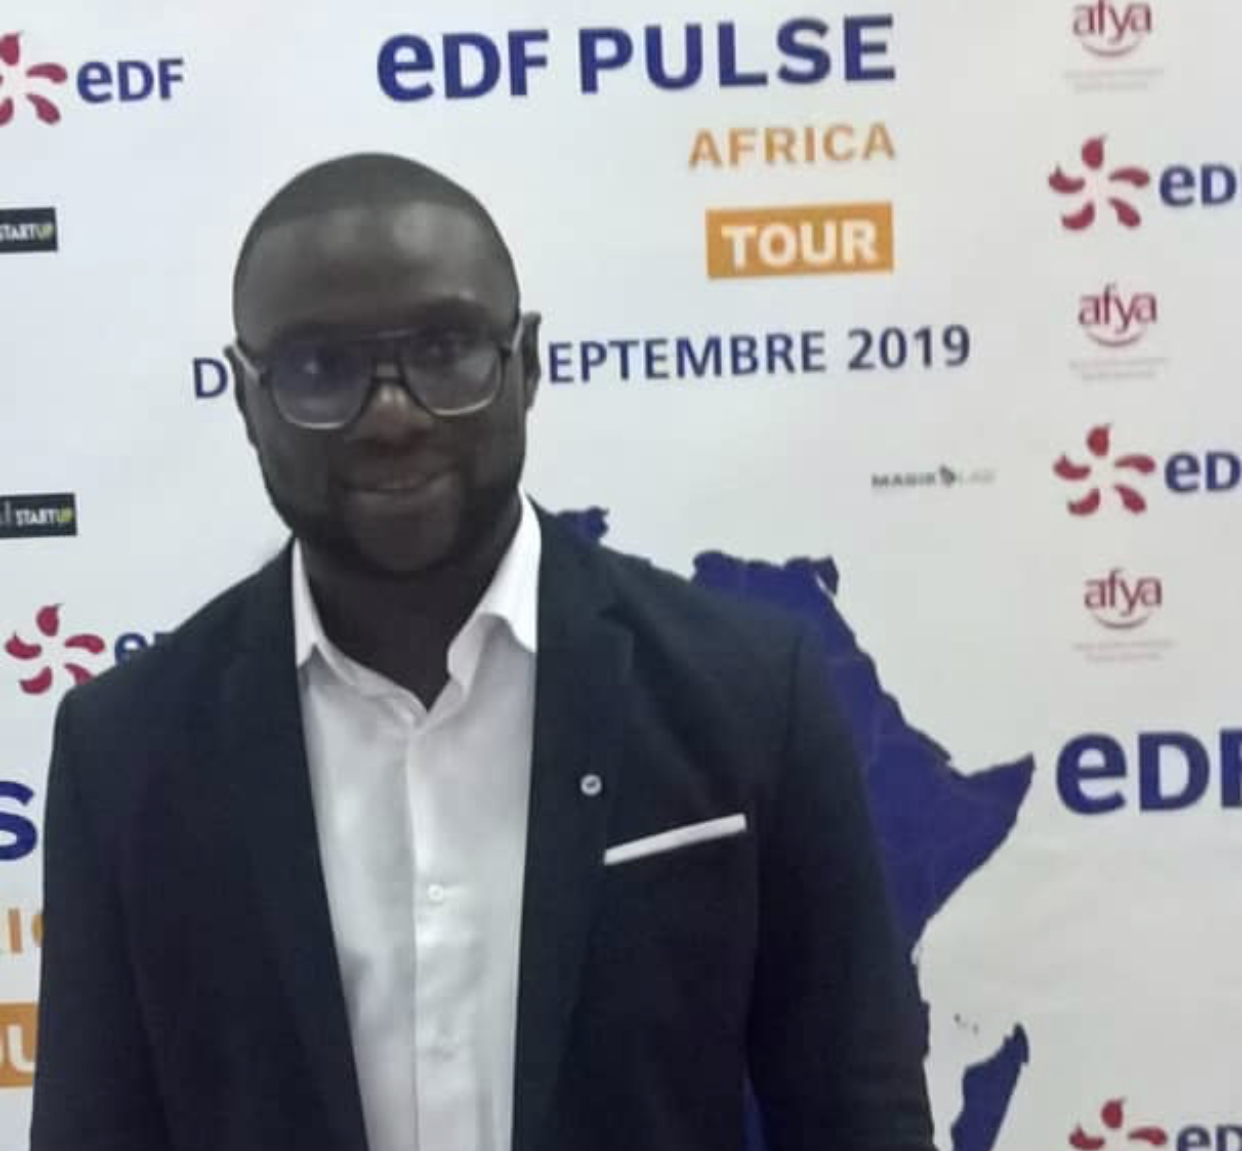 Transition  écologique : Edf Pulse Africa Tour évoque l’existence de "solutions innovantes" au Sénégal